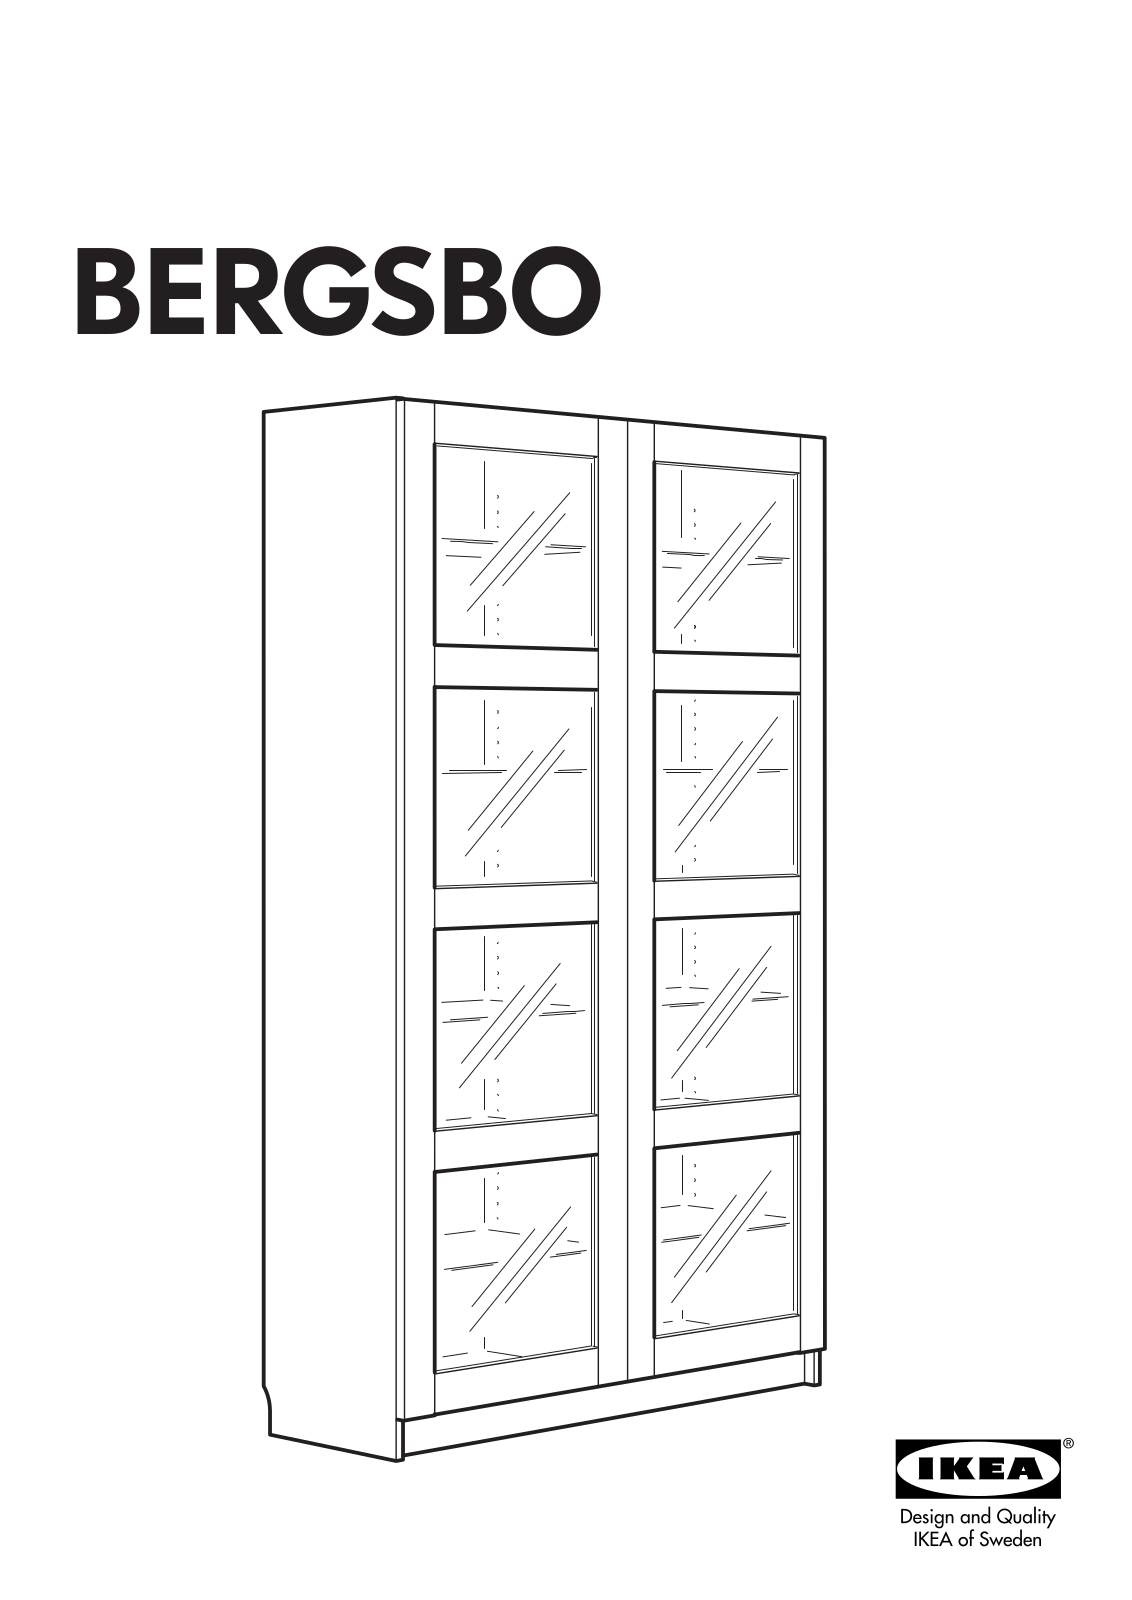 IKEA BERGSBO User Manual